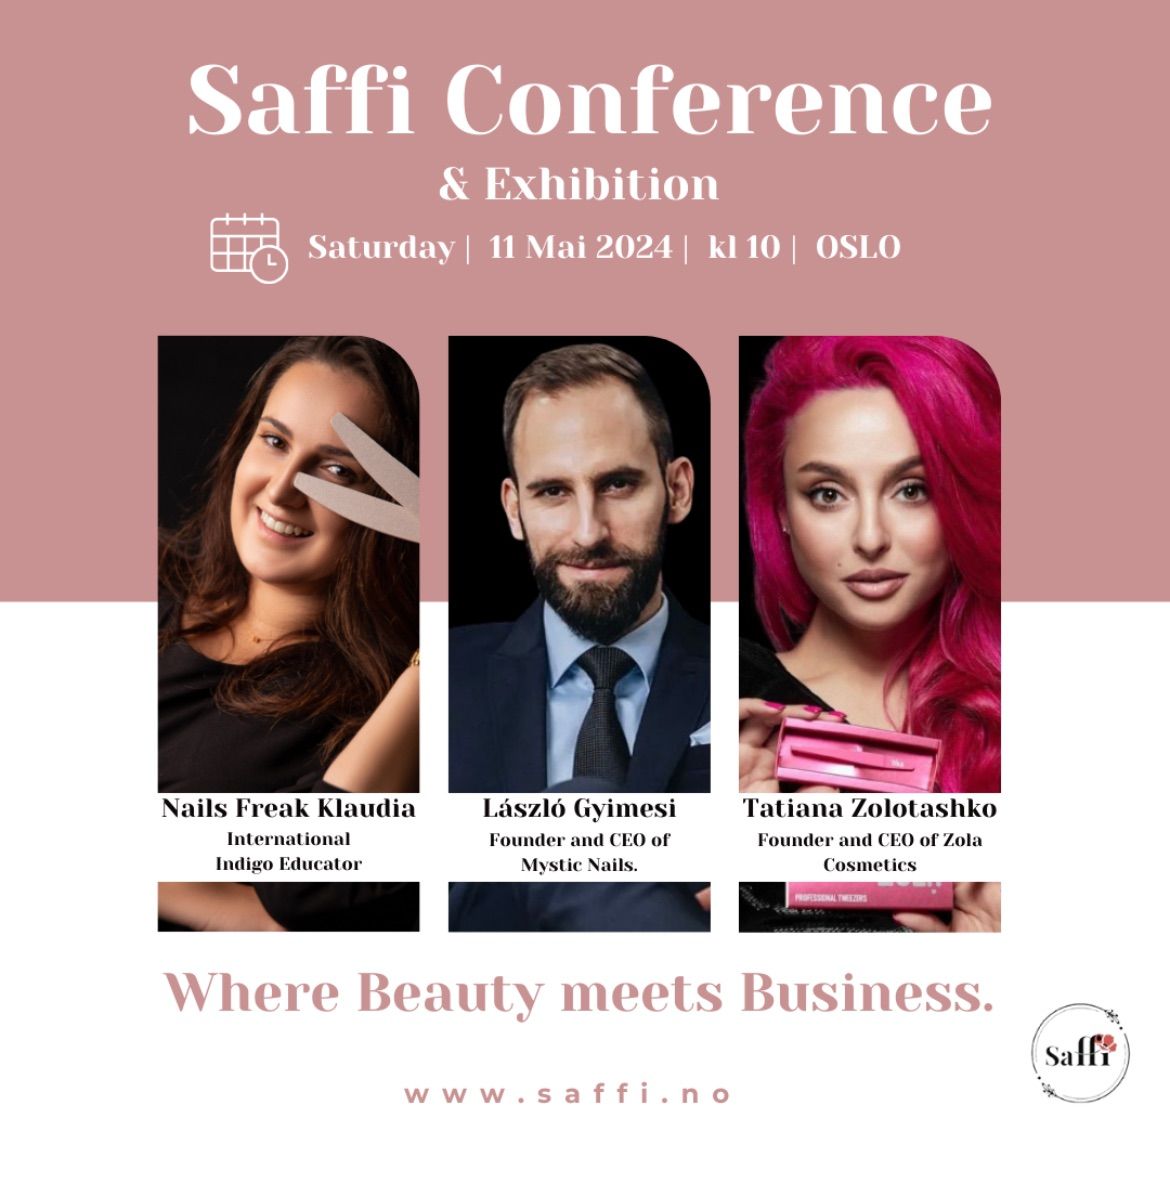 Saffi Conference & Exhibition 